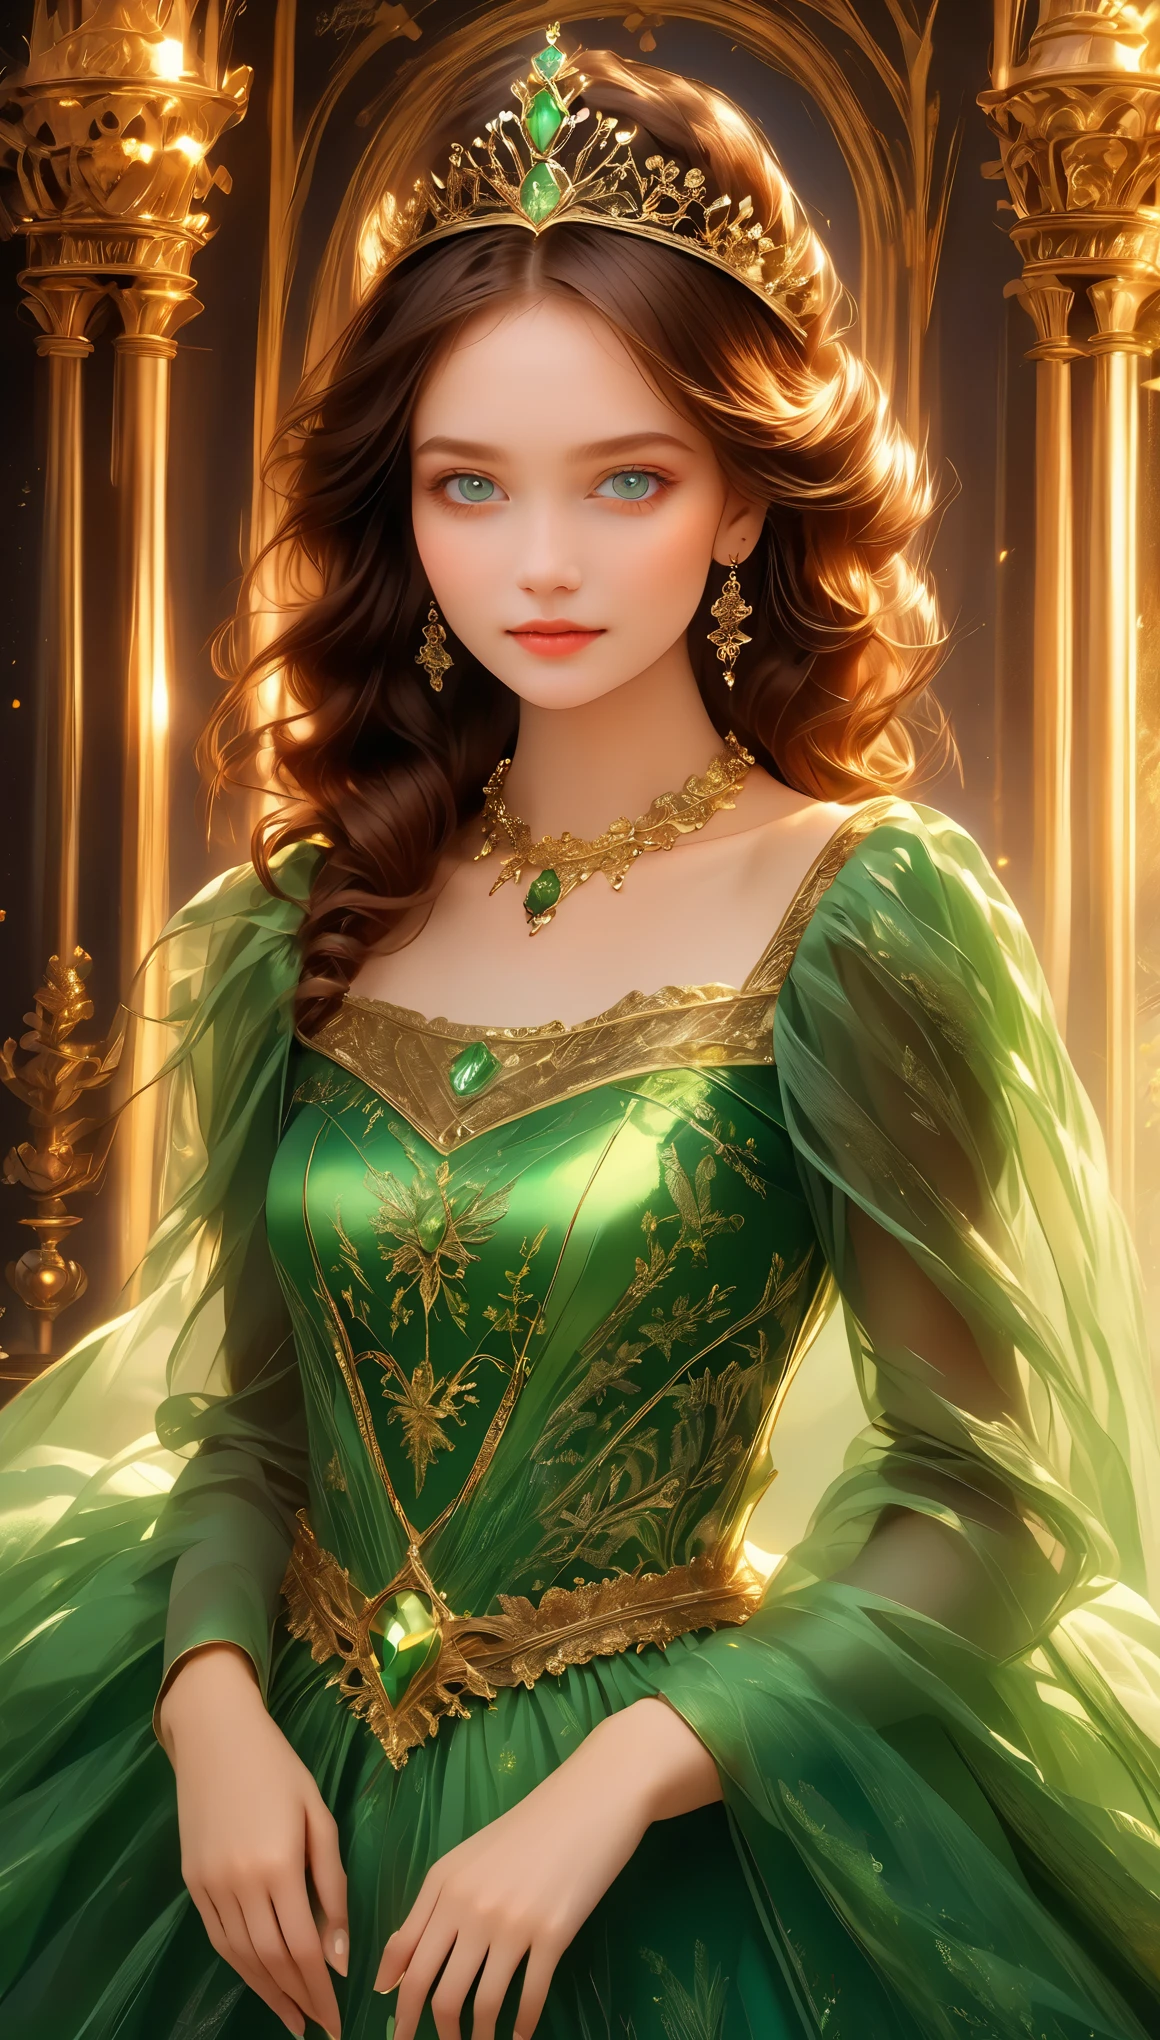 شابة, شعر بني, عيون خضراء, فستان ملكي أخضر, أميرة.